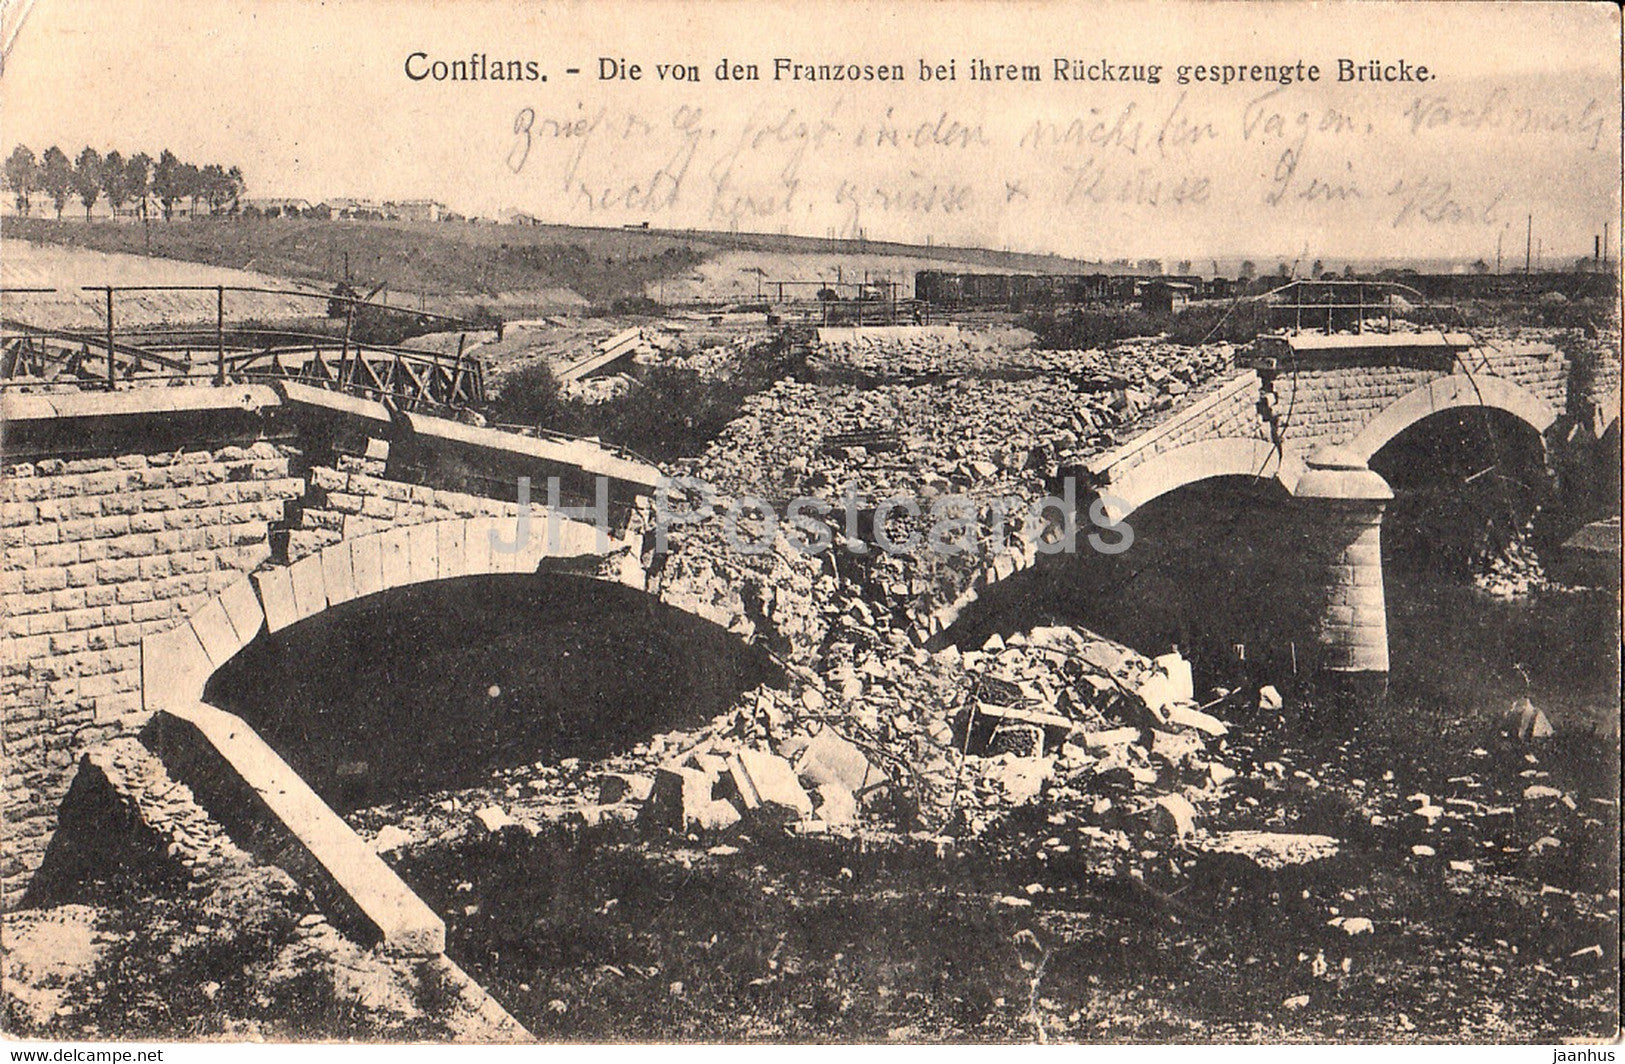 Conflans - Die von den Franzosen bei ihrem Rückzug gesprengte brucke - old postcard - feldpost - 1915 - France - used - JH Postcards